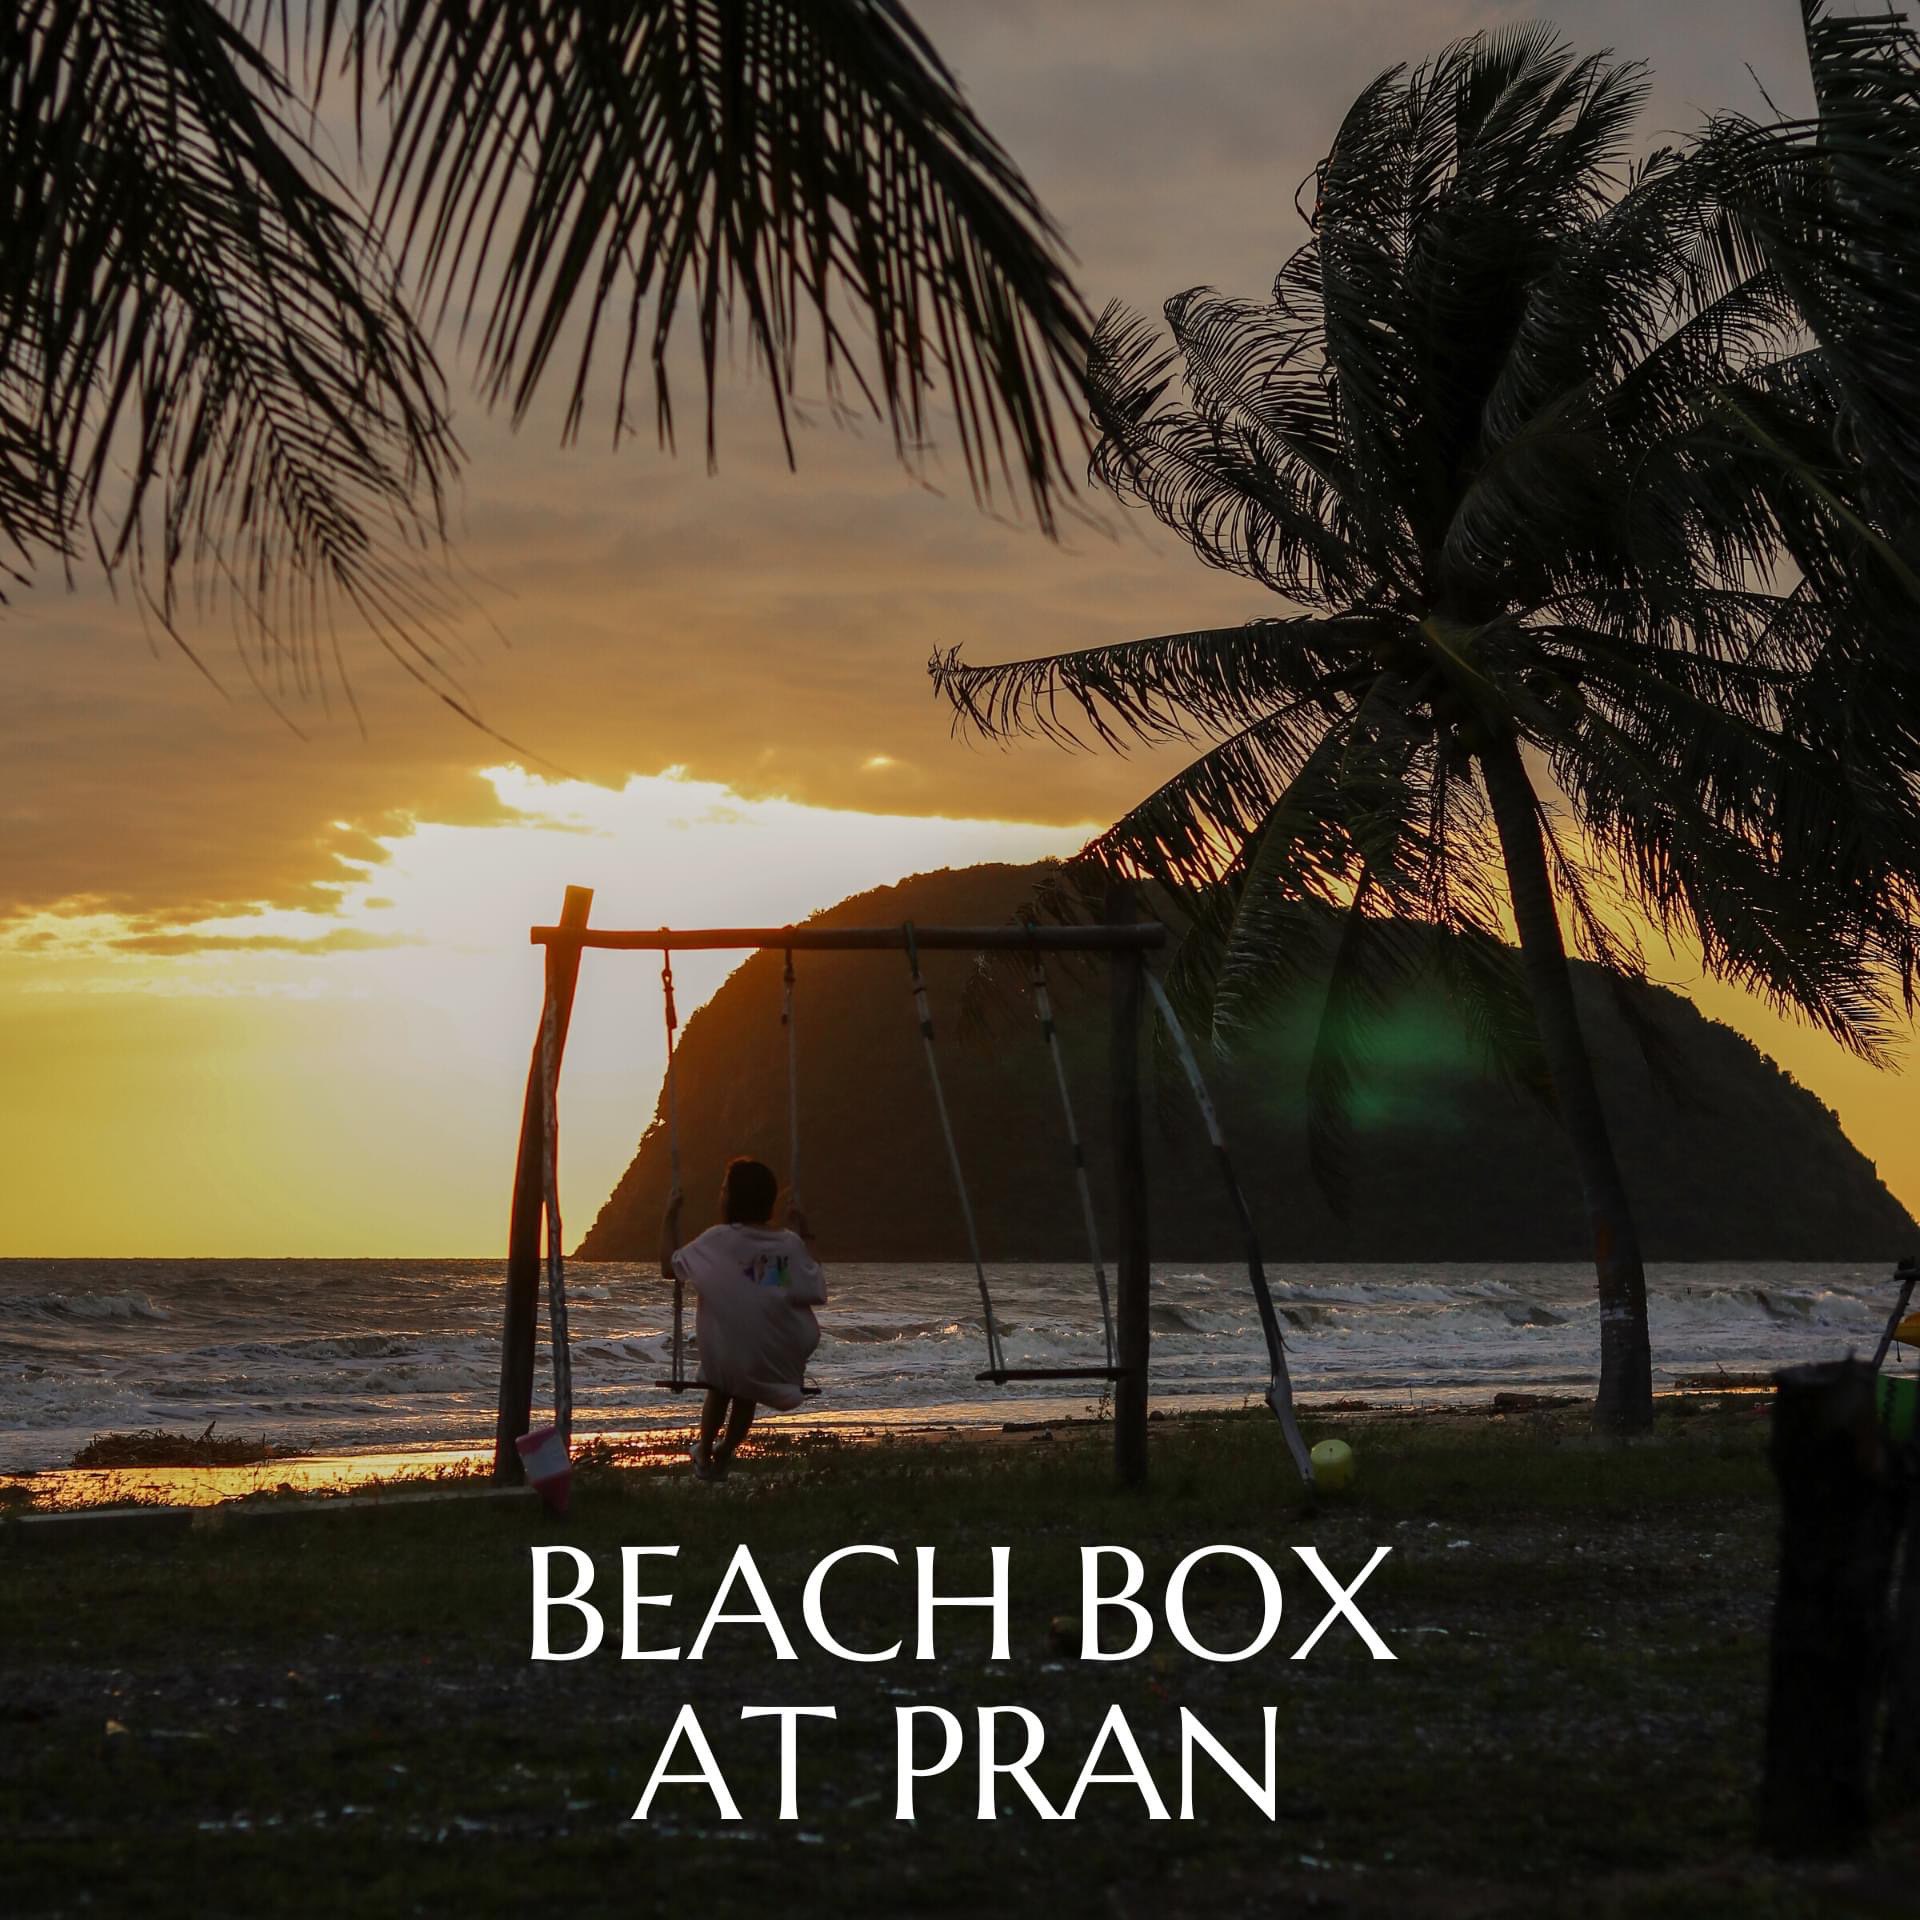 Pran的海滩盒,一千块钱,可以睡在海边。